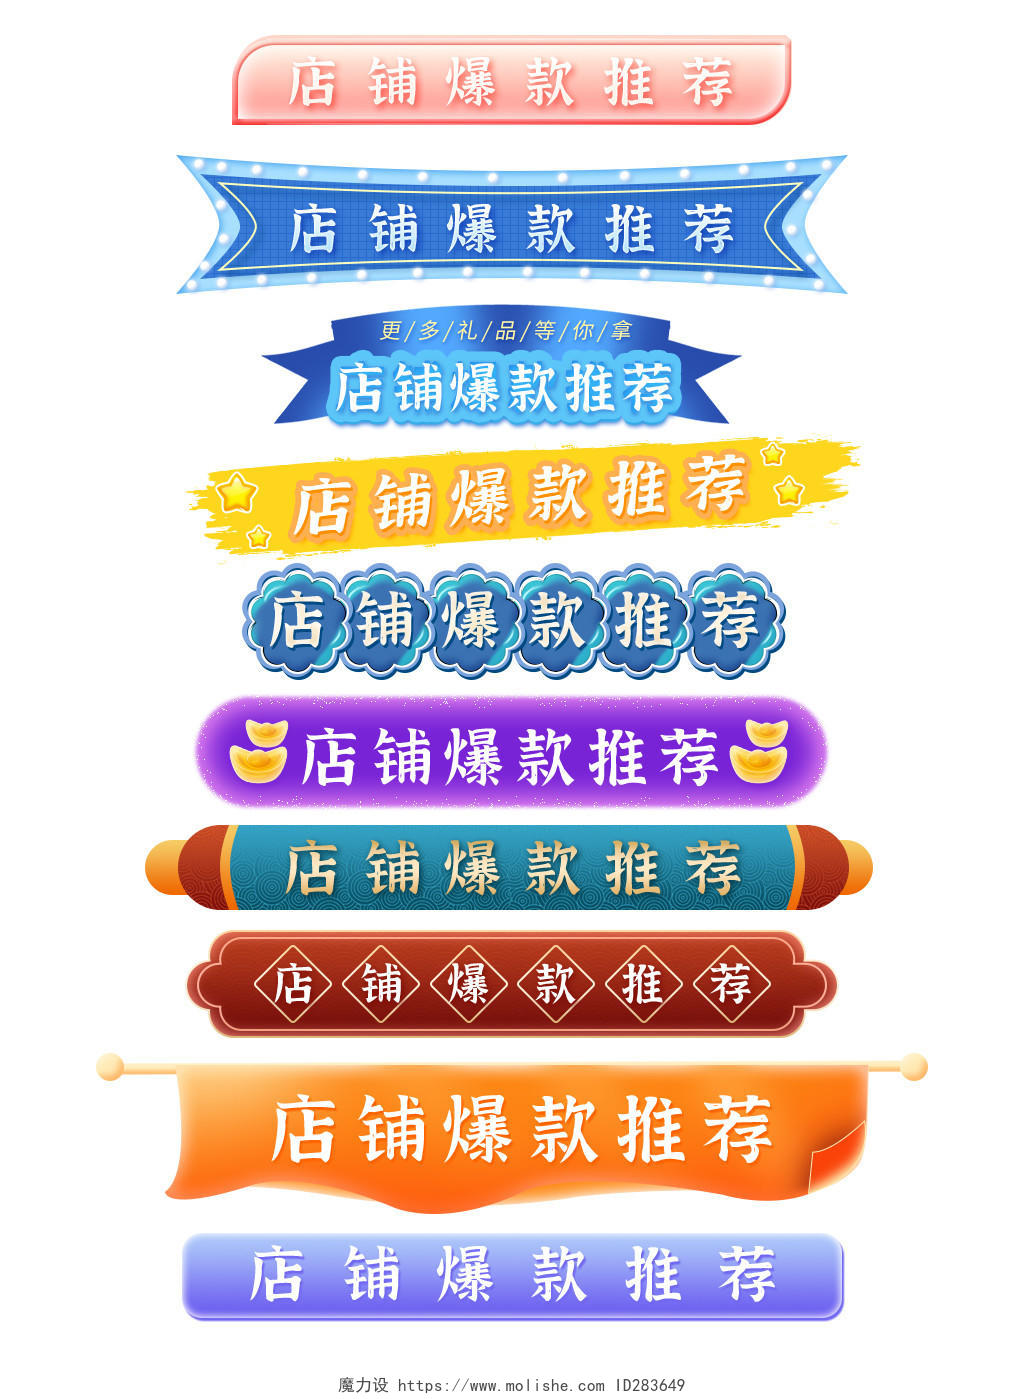 蓝色古典中国风手绘店铺爆款推荐天猫618标题栏分割栏导航栏